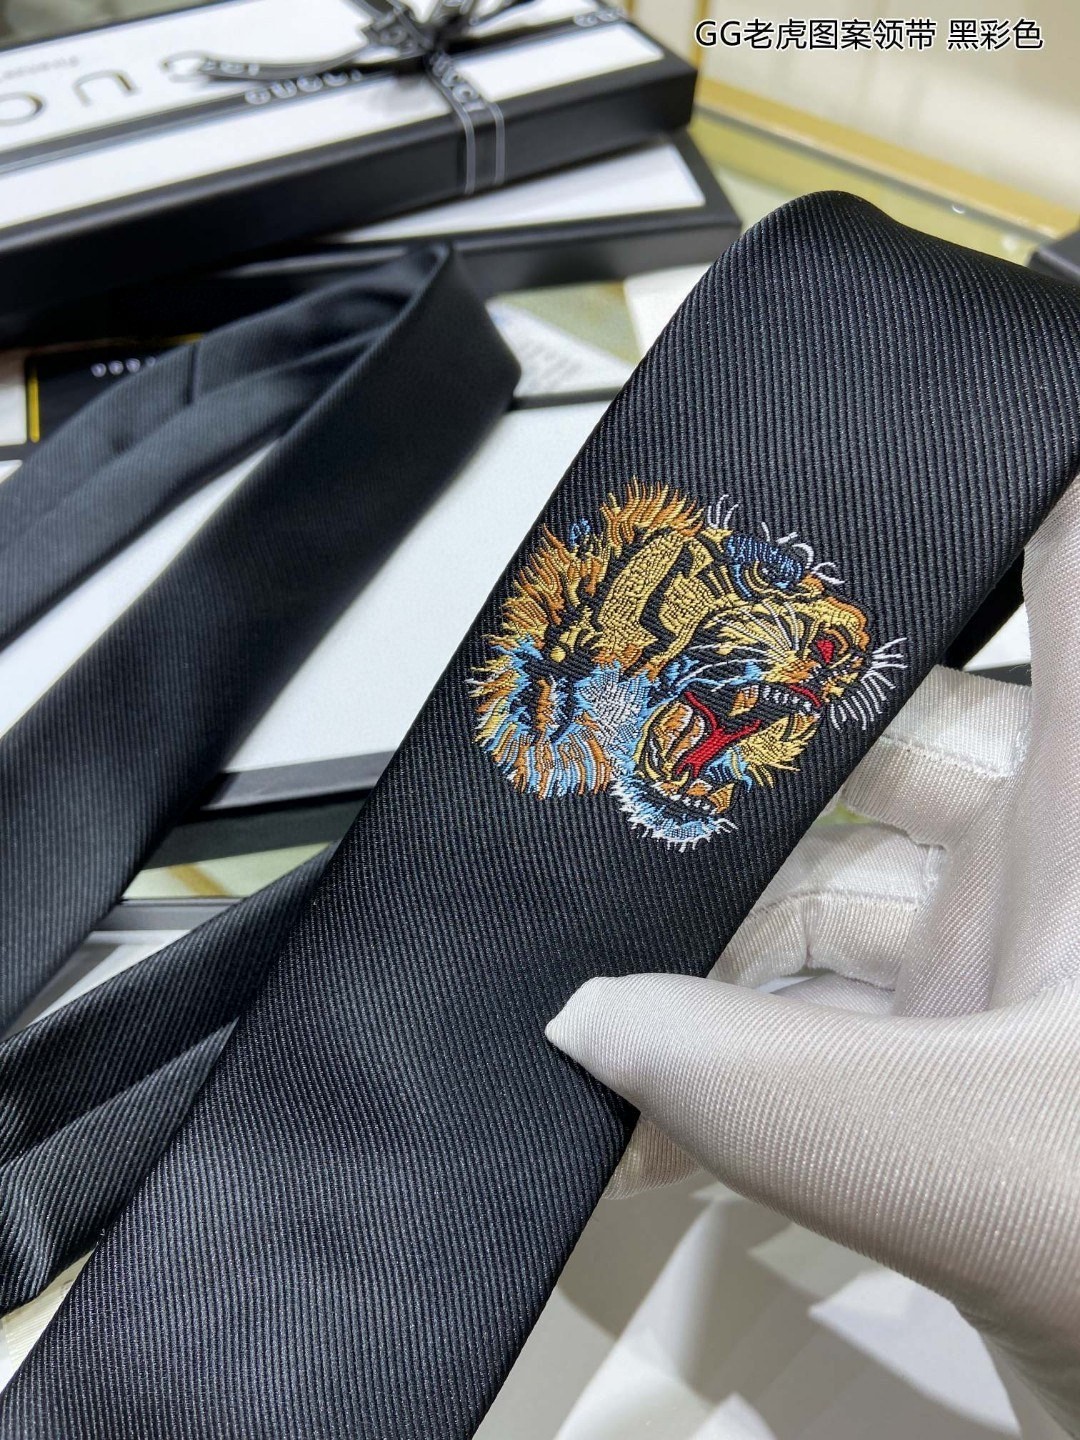 上新特价G家男士领带系列GG老虎图案领带稀有展现精湛手工与时尚优雅的理想选择这款领带将标志性的主题动物小